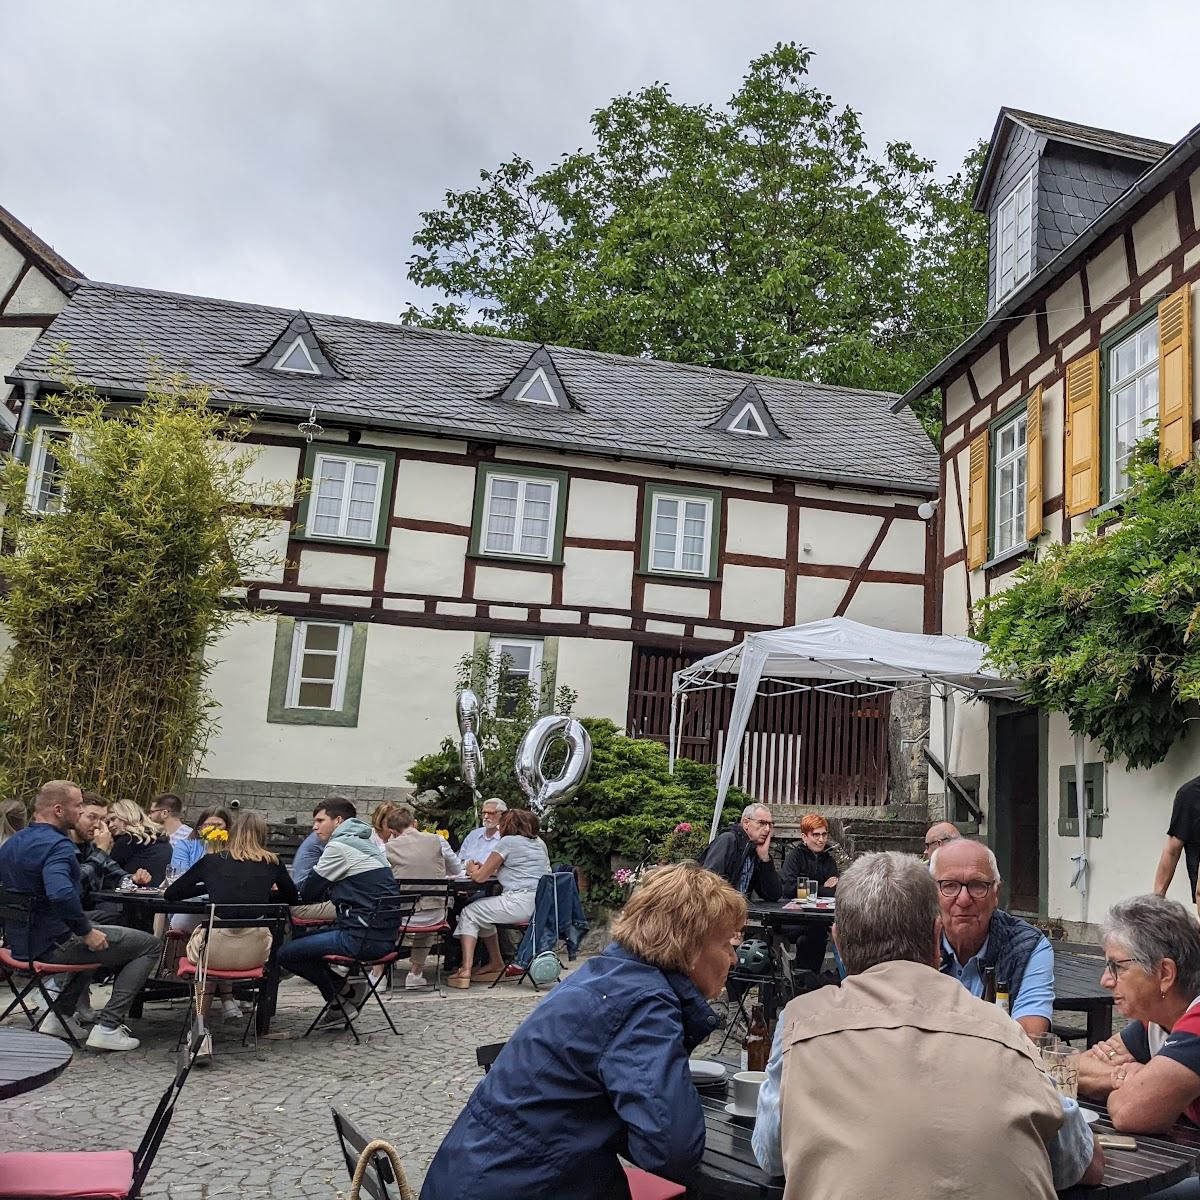 Restaurant "Hofener Mühle" in Runkel